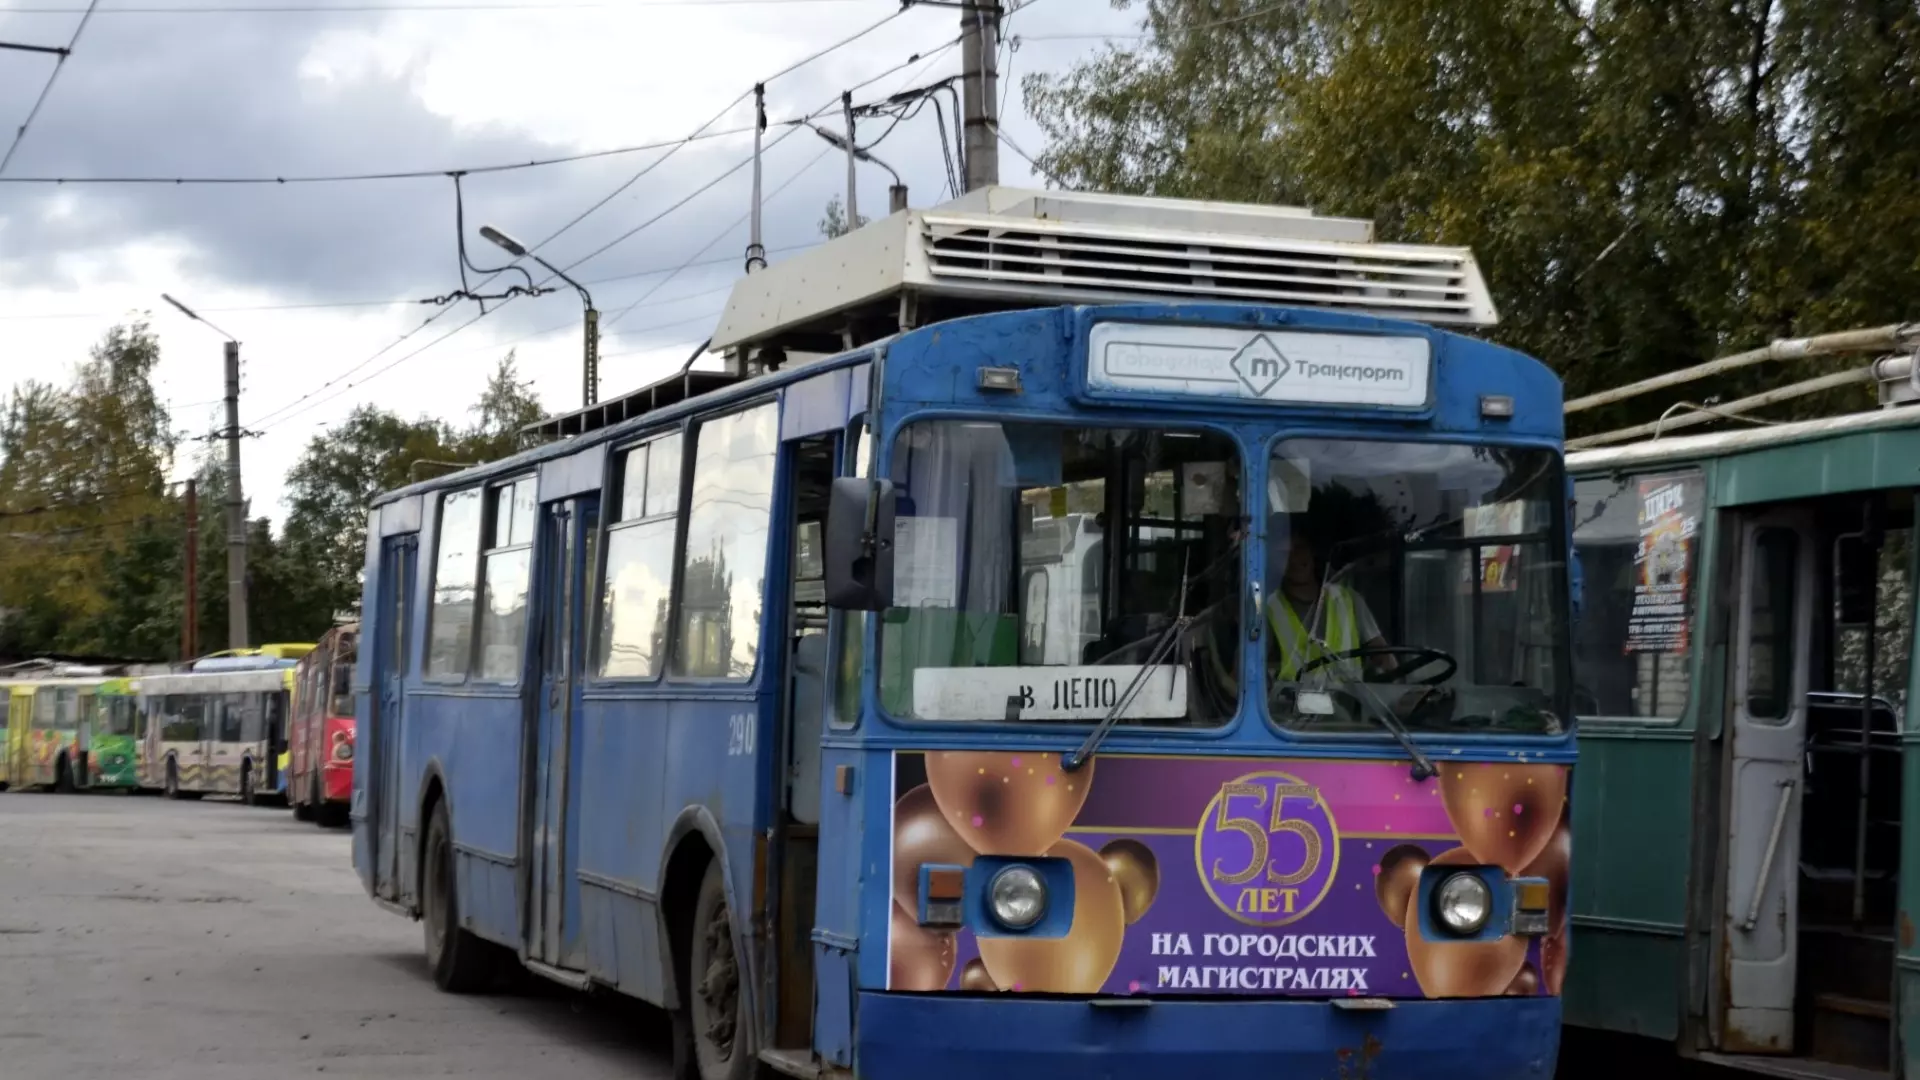 Троллейбусы в Петрозаводске будут работать только за наличный расчет